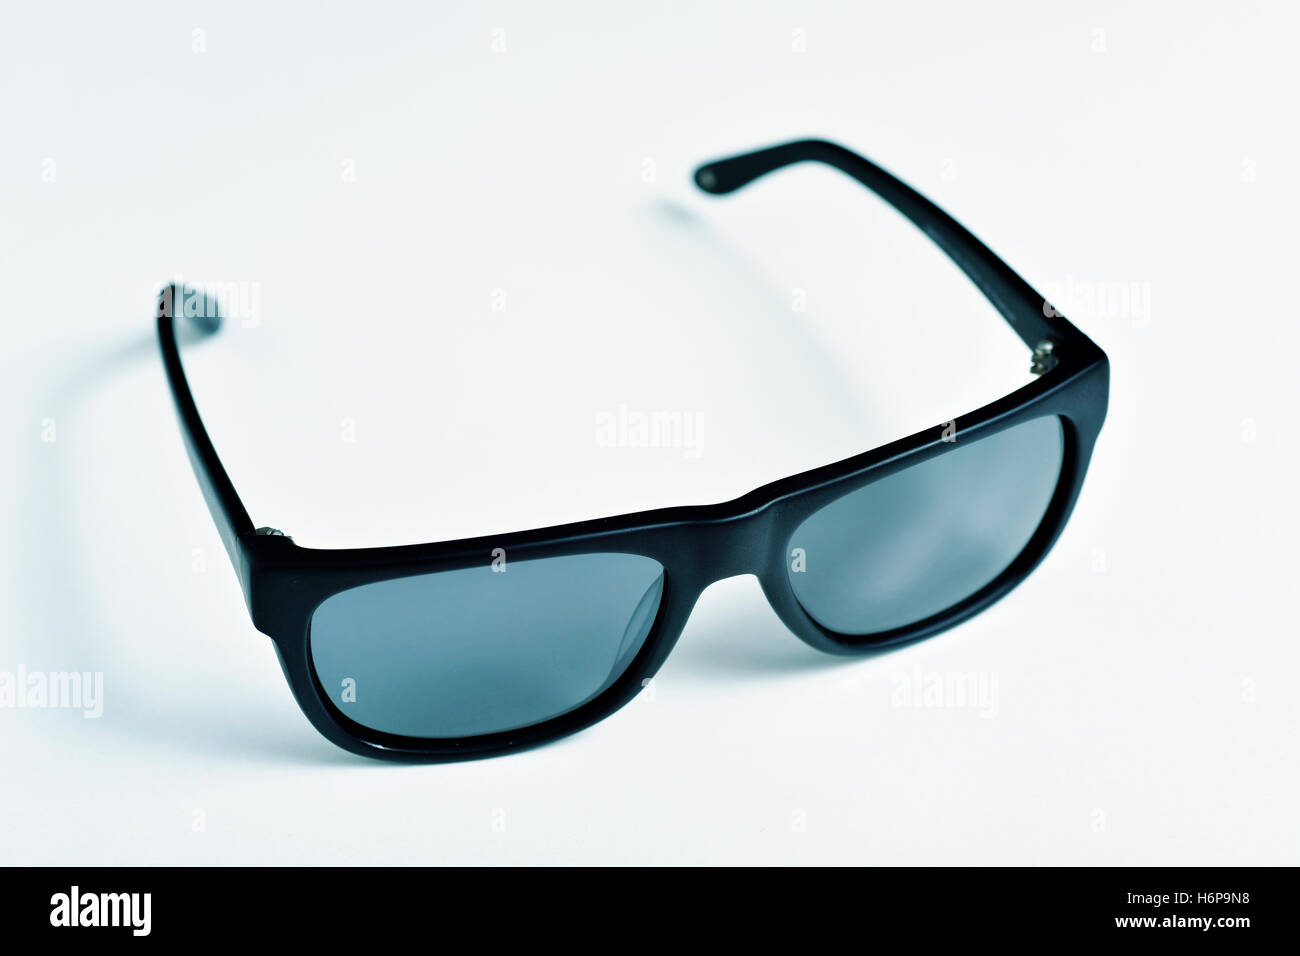 Primo piano di una coppia di plastica nera bordata di occhiali da sole su una superficie bianca Foto Stock